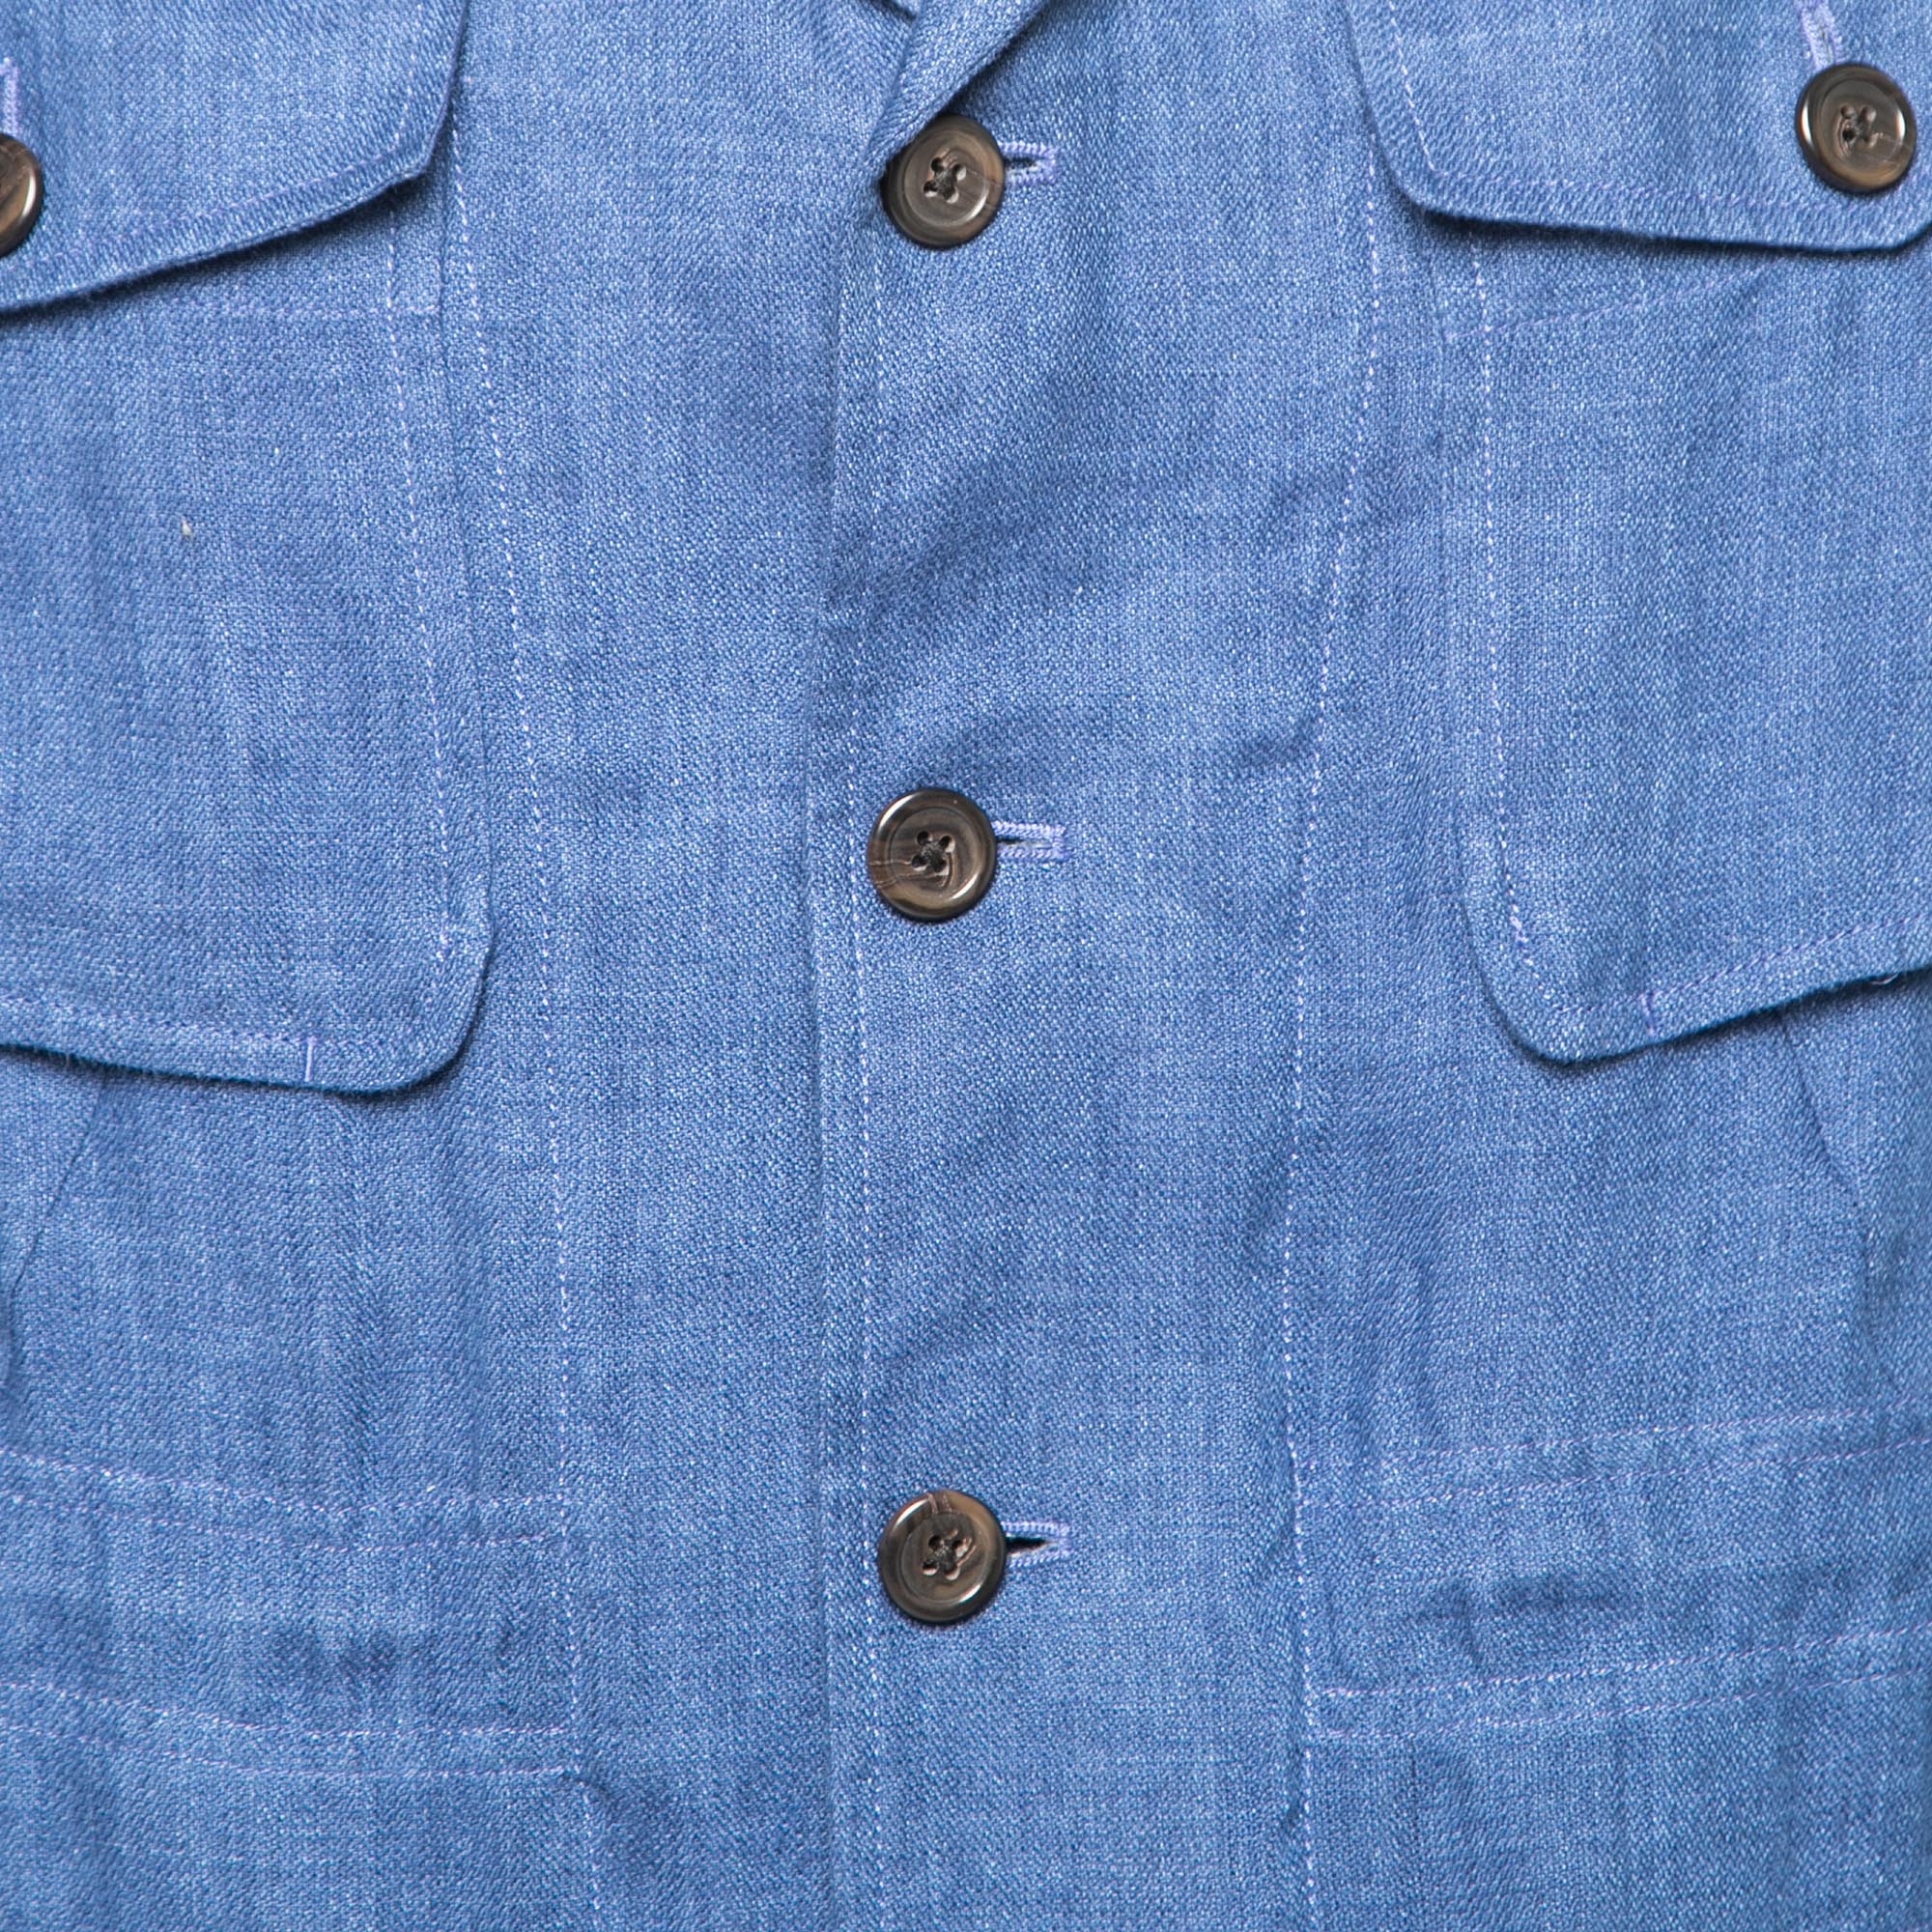 Polo Ralph Lauren Blue Linen Side Slit Button Front Jacket XS